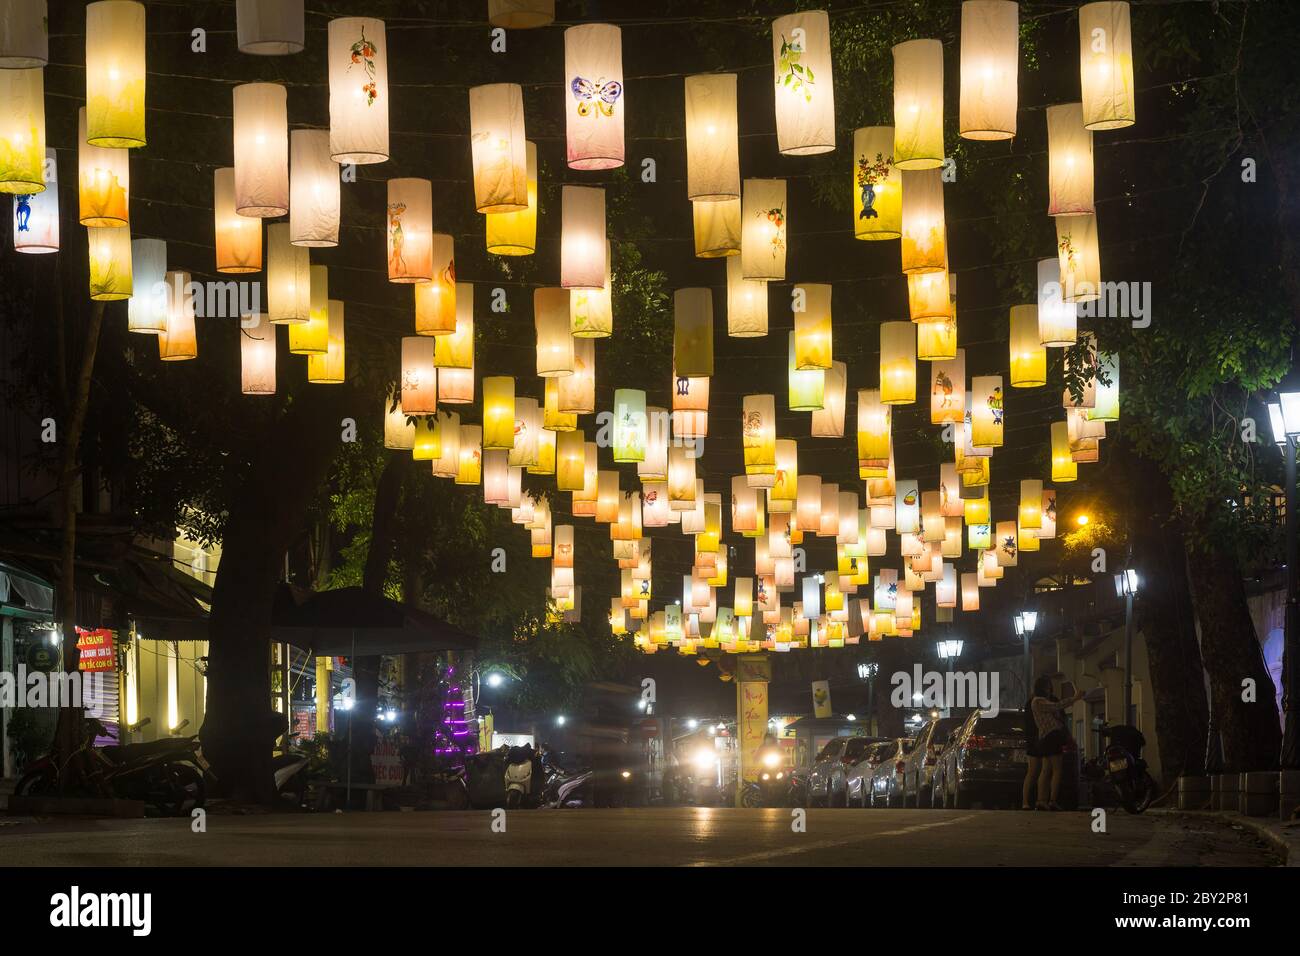 Hanoï Vietnam - Phung Hung rue de nuit décorée avec des lanternes pendant la saison de Tet, Hanoi, Vietnam, Asie du Sud-est. Banque D'Images